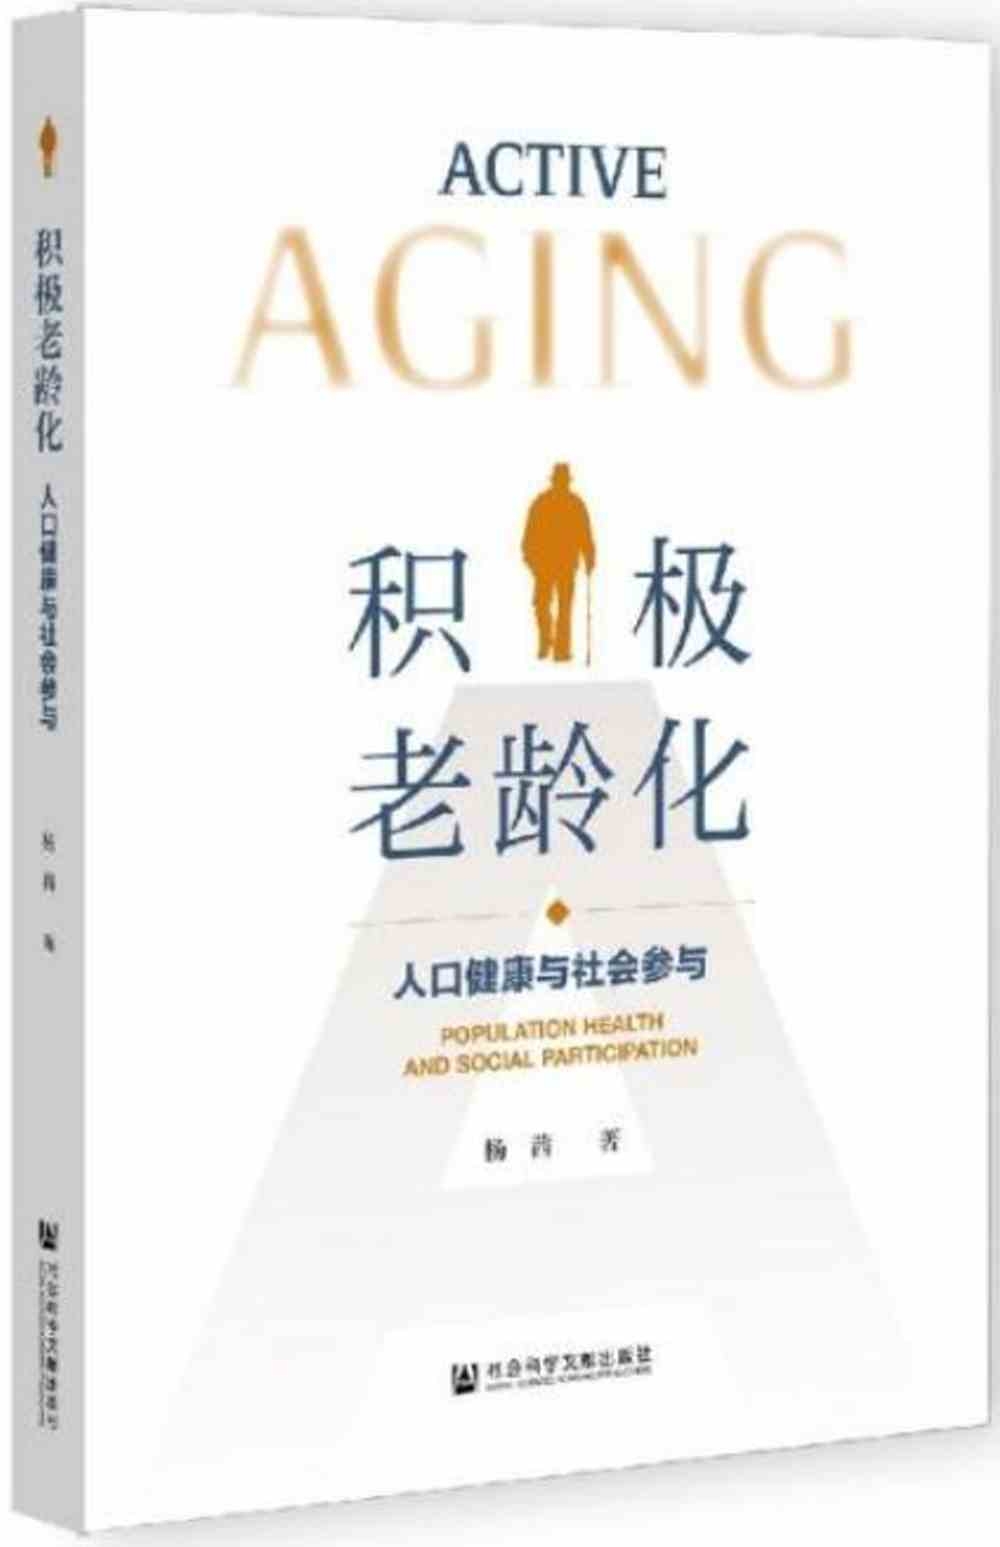 積極老齡化：人口健康與社會參與